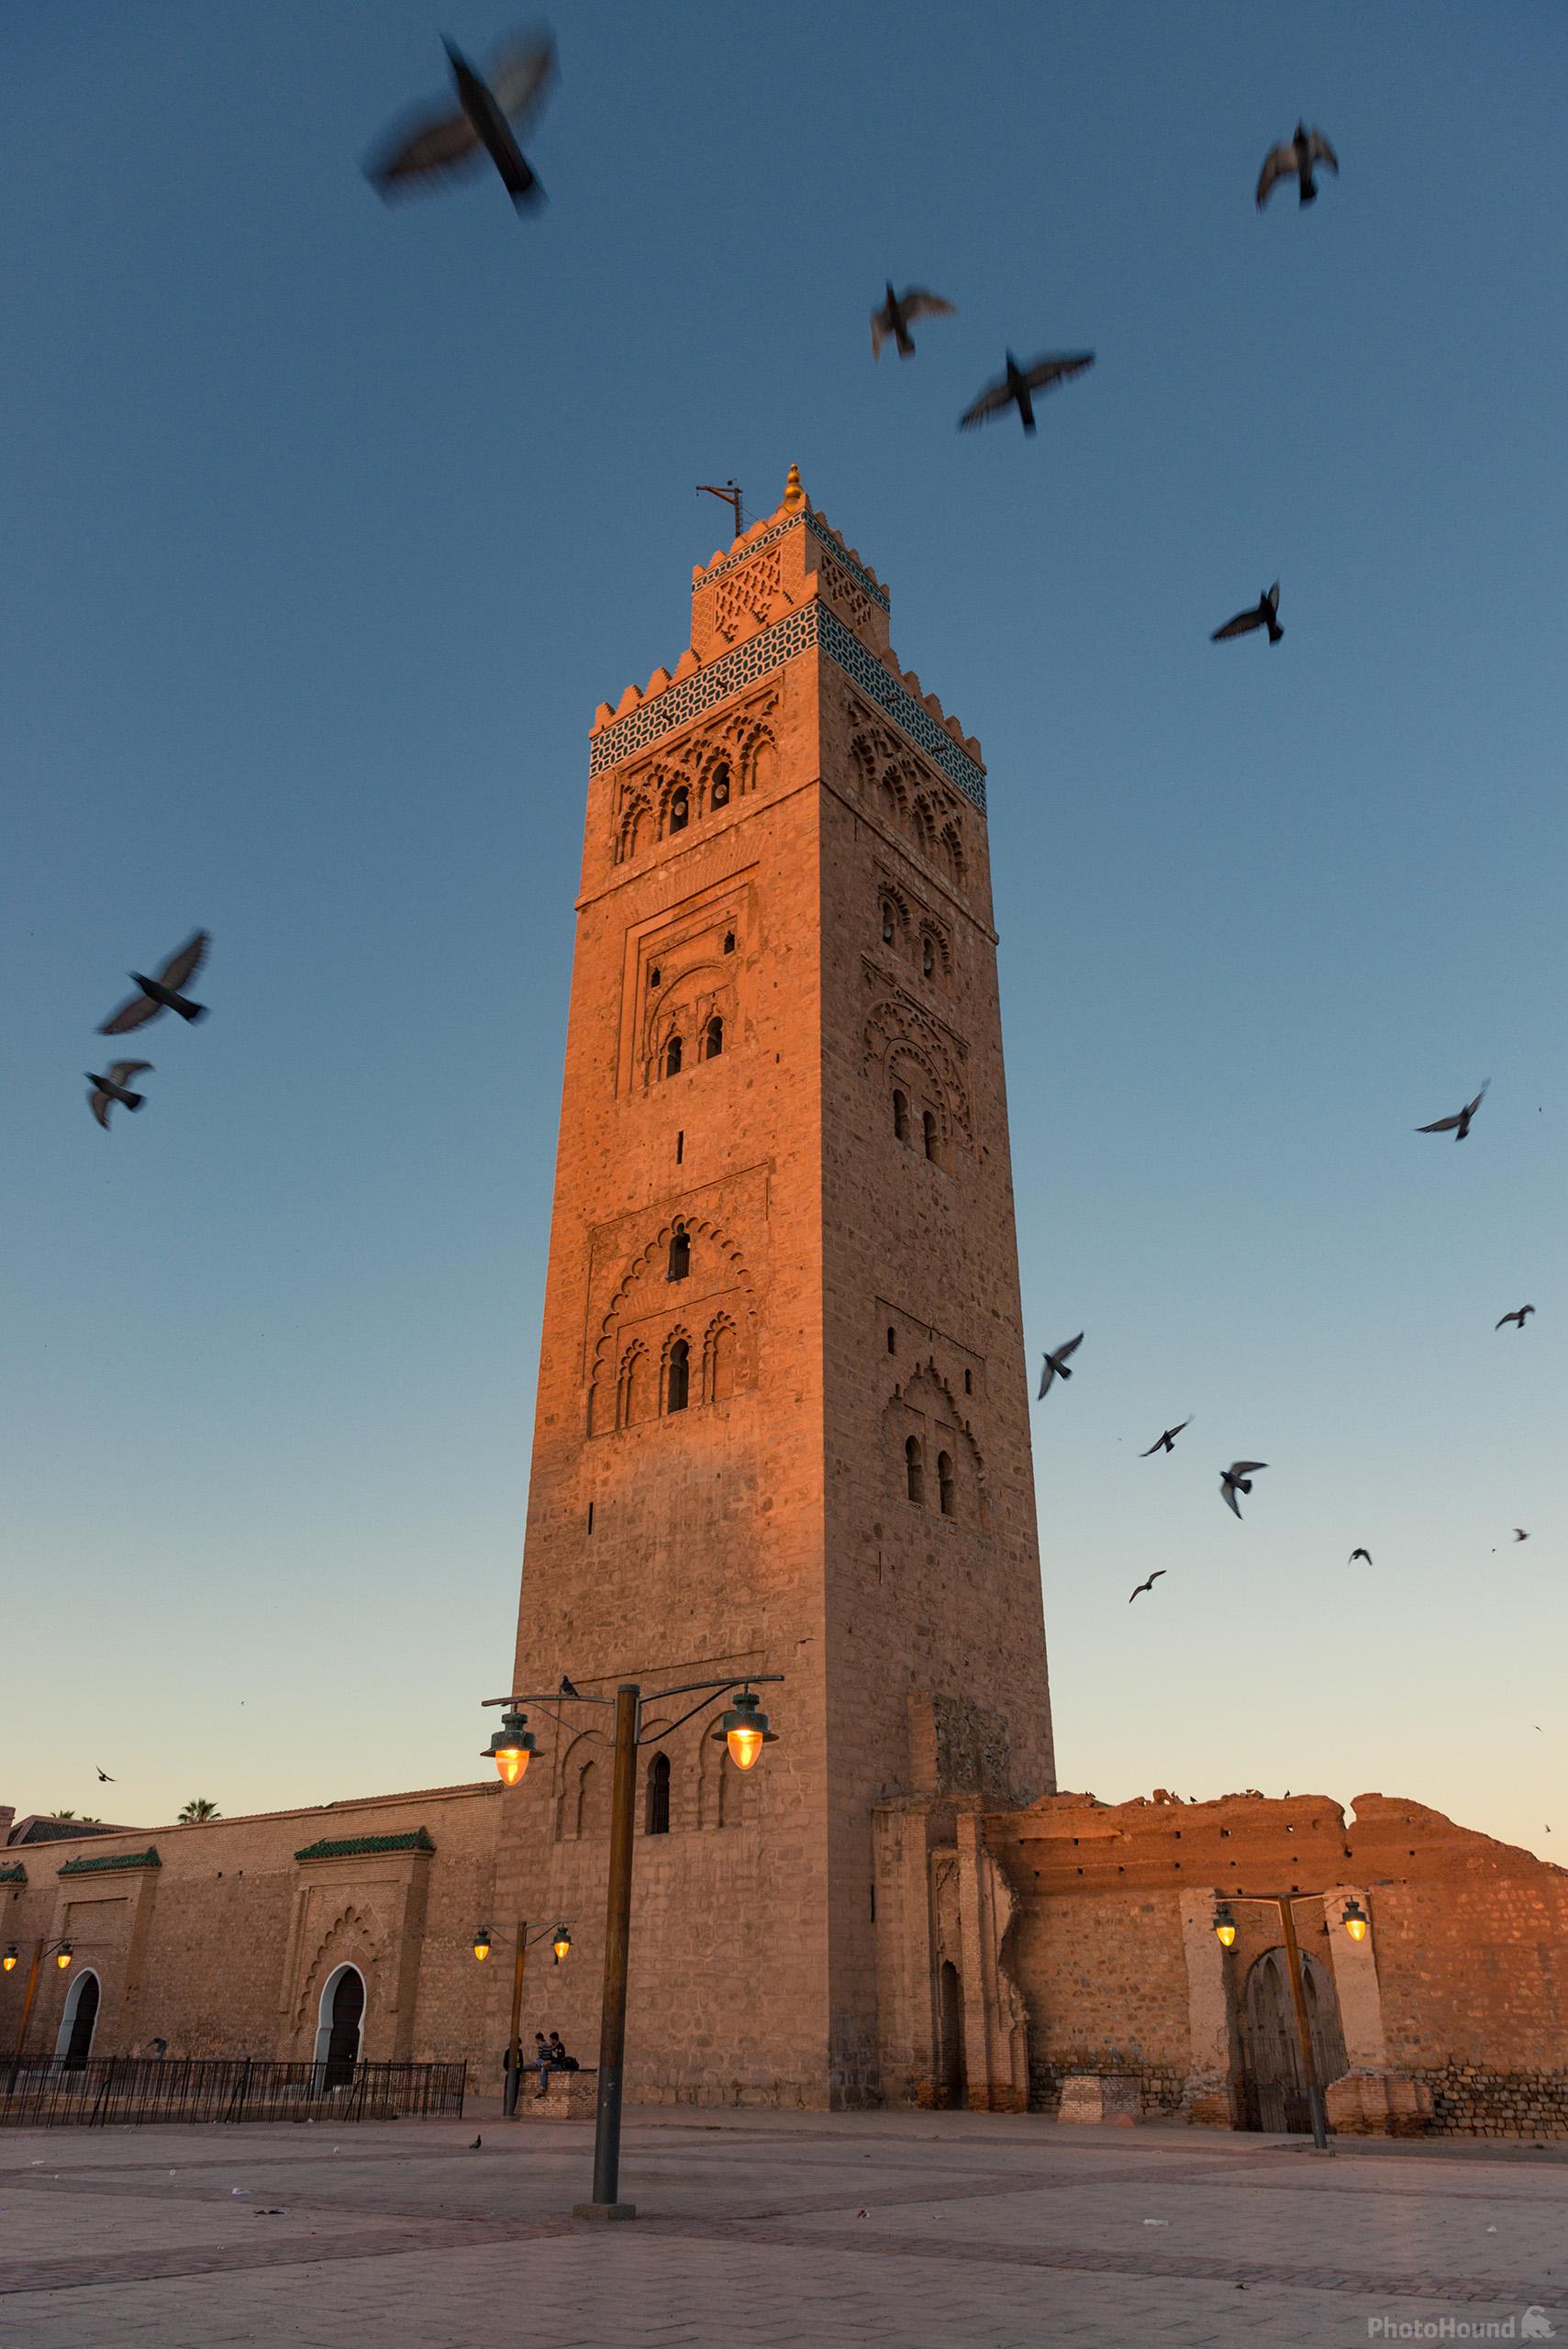 Image of Koutoubia Minaret by Luka Esenko